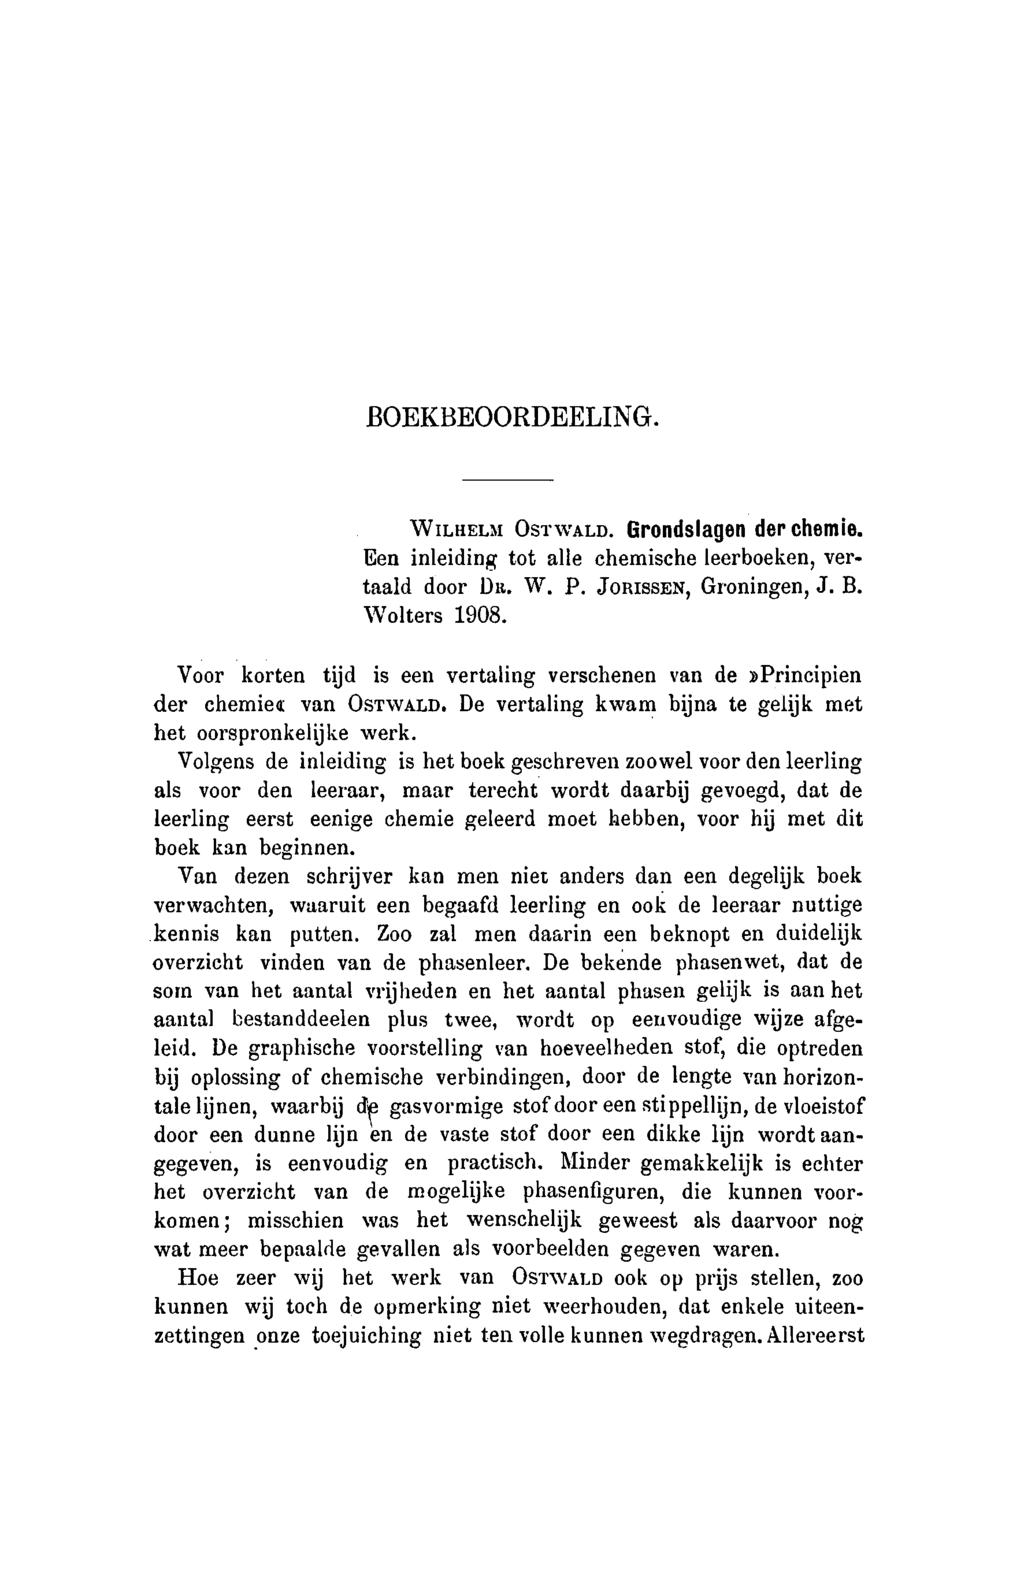 Boekbeoordeeling. Wilhelm Ostwald. Grondslagen der chemie. Een inleiding tot alle chemische leerboeken, vertaald door Dr. W. P. Jorissen, Groningen, J. B. Wolters 1908.